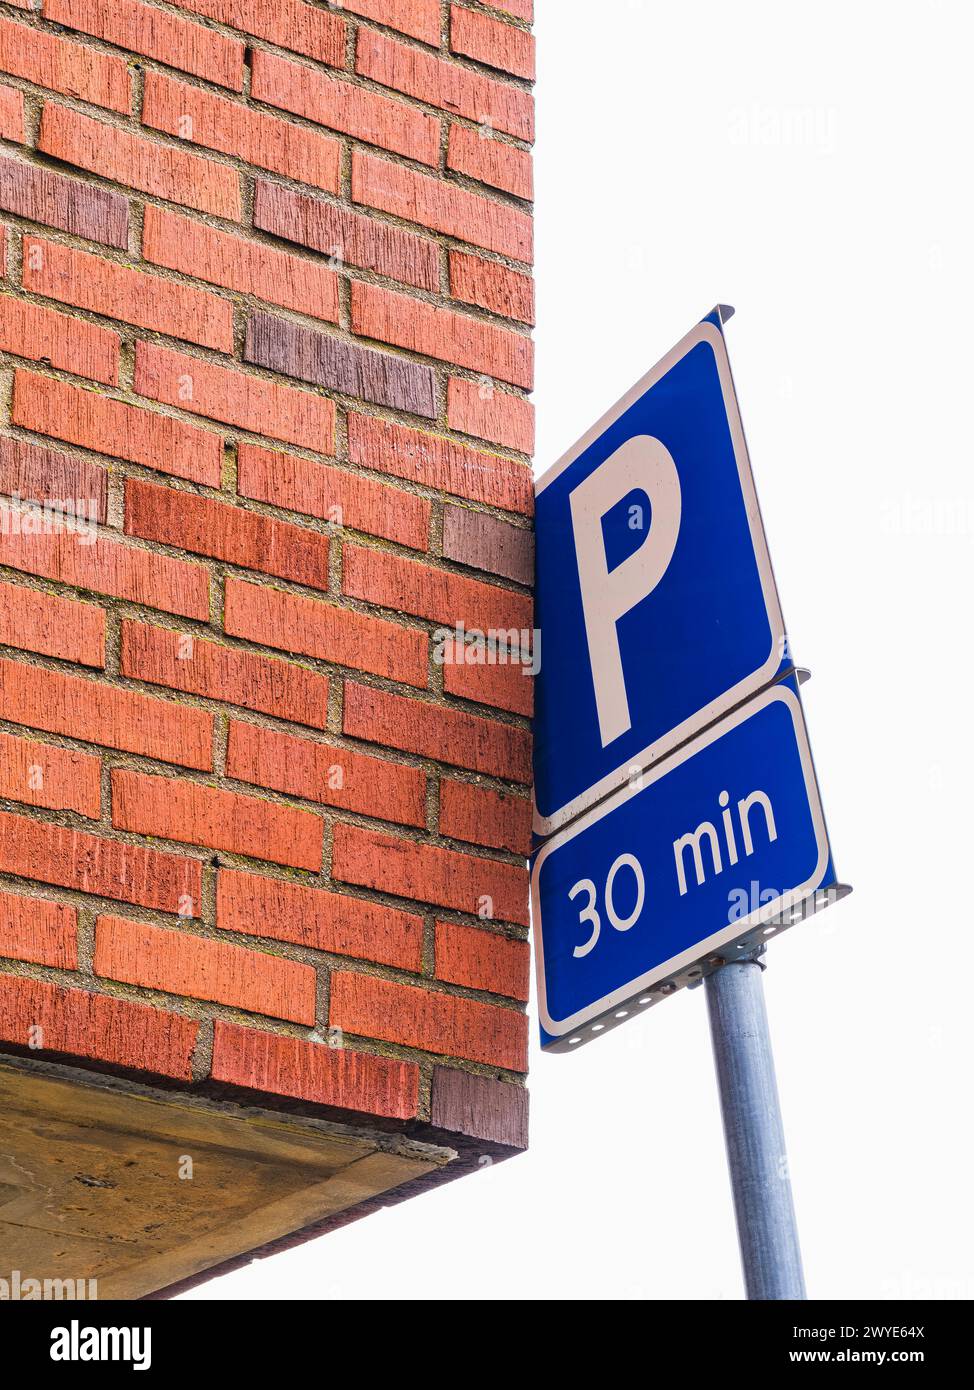 Un panneau de stationnement bleu est affiché bien en évidence à côté d'un bâtiment en briques rouges dans un cadre urbain. Le panneau indique les réglementations et restrictions de stationnement Banque D'Images